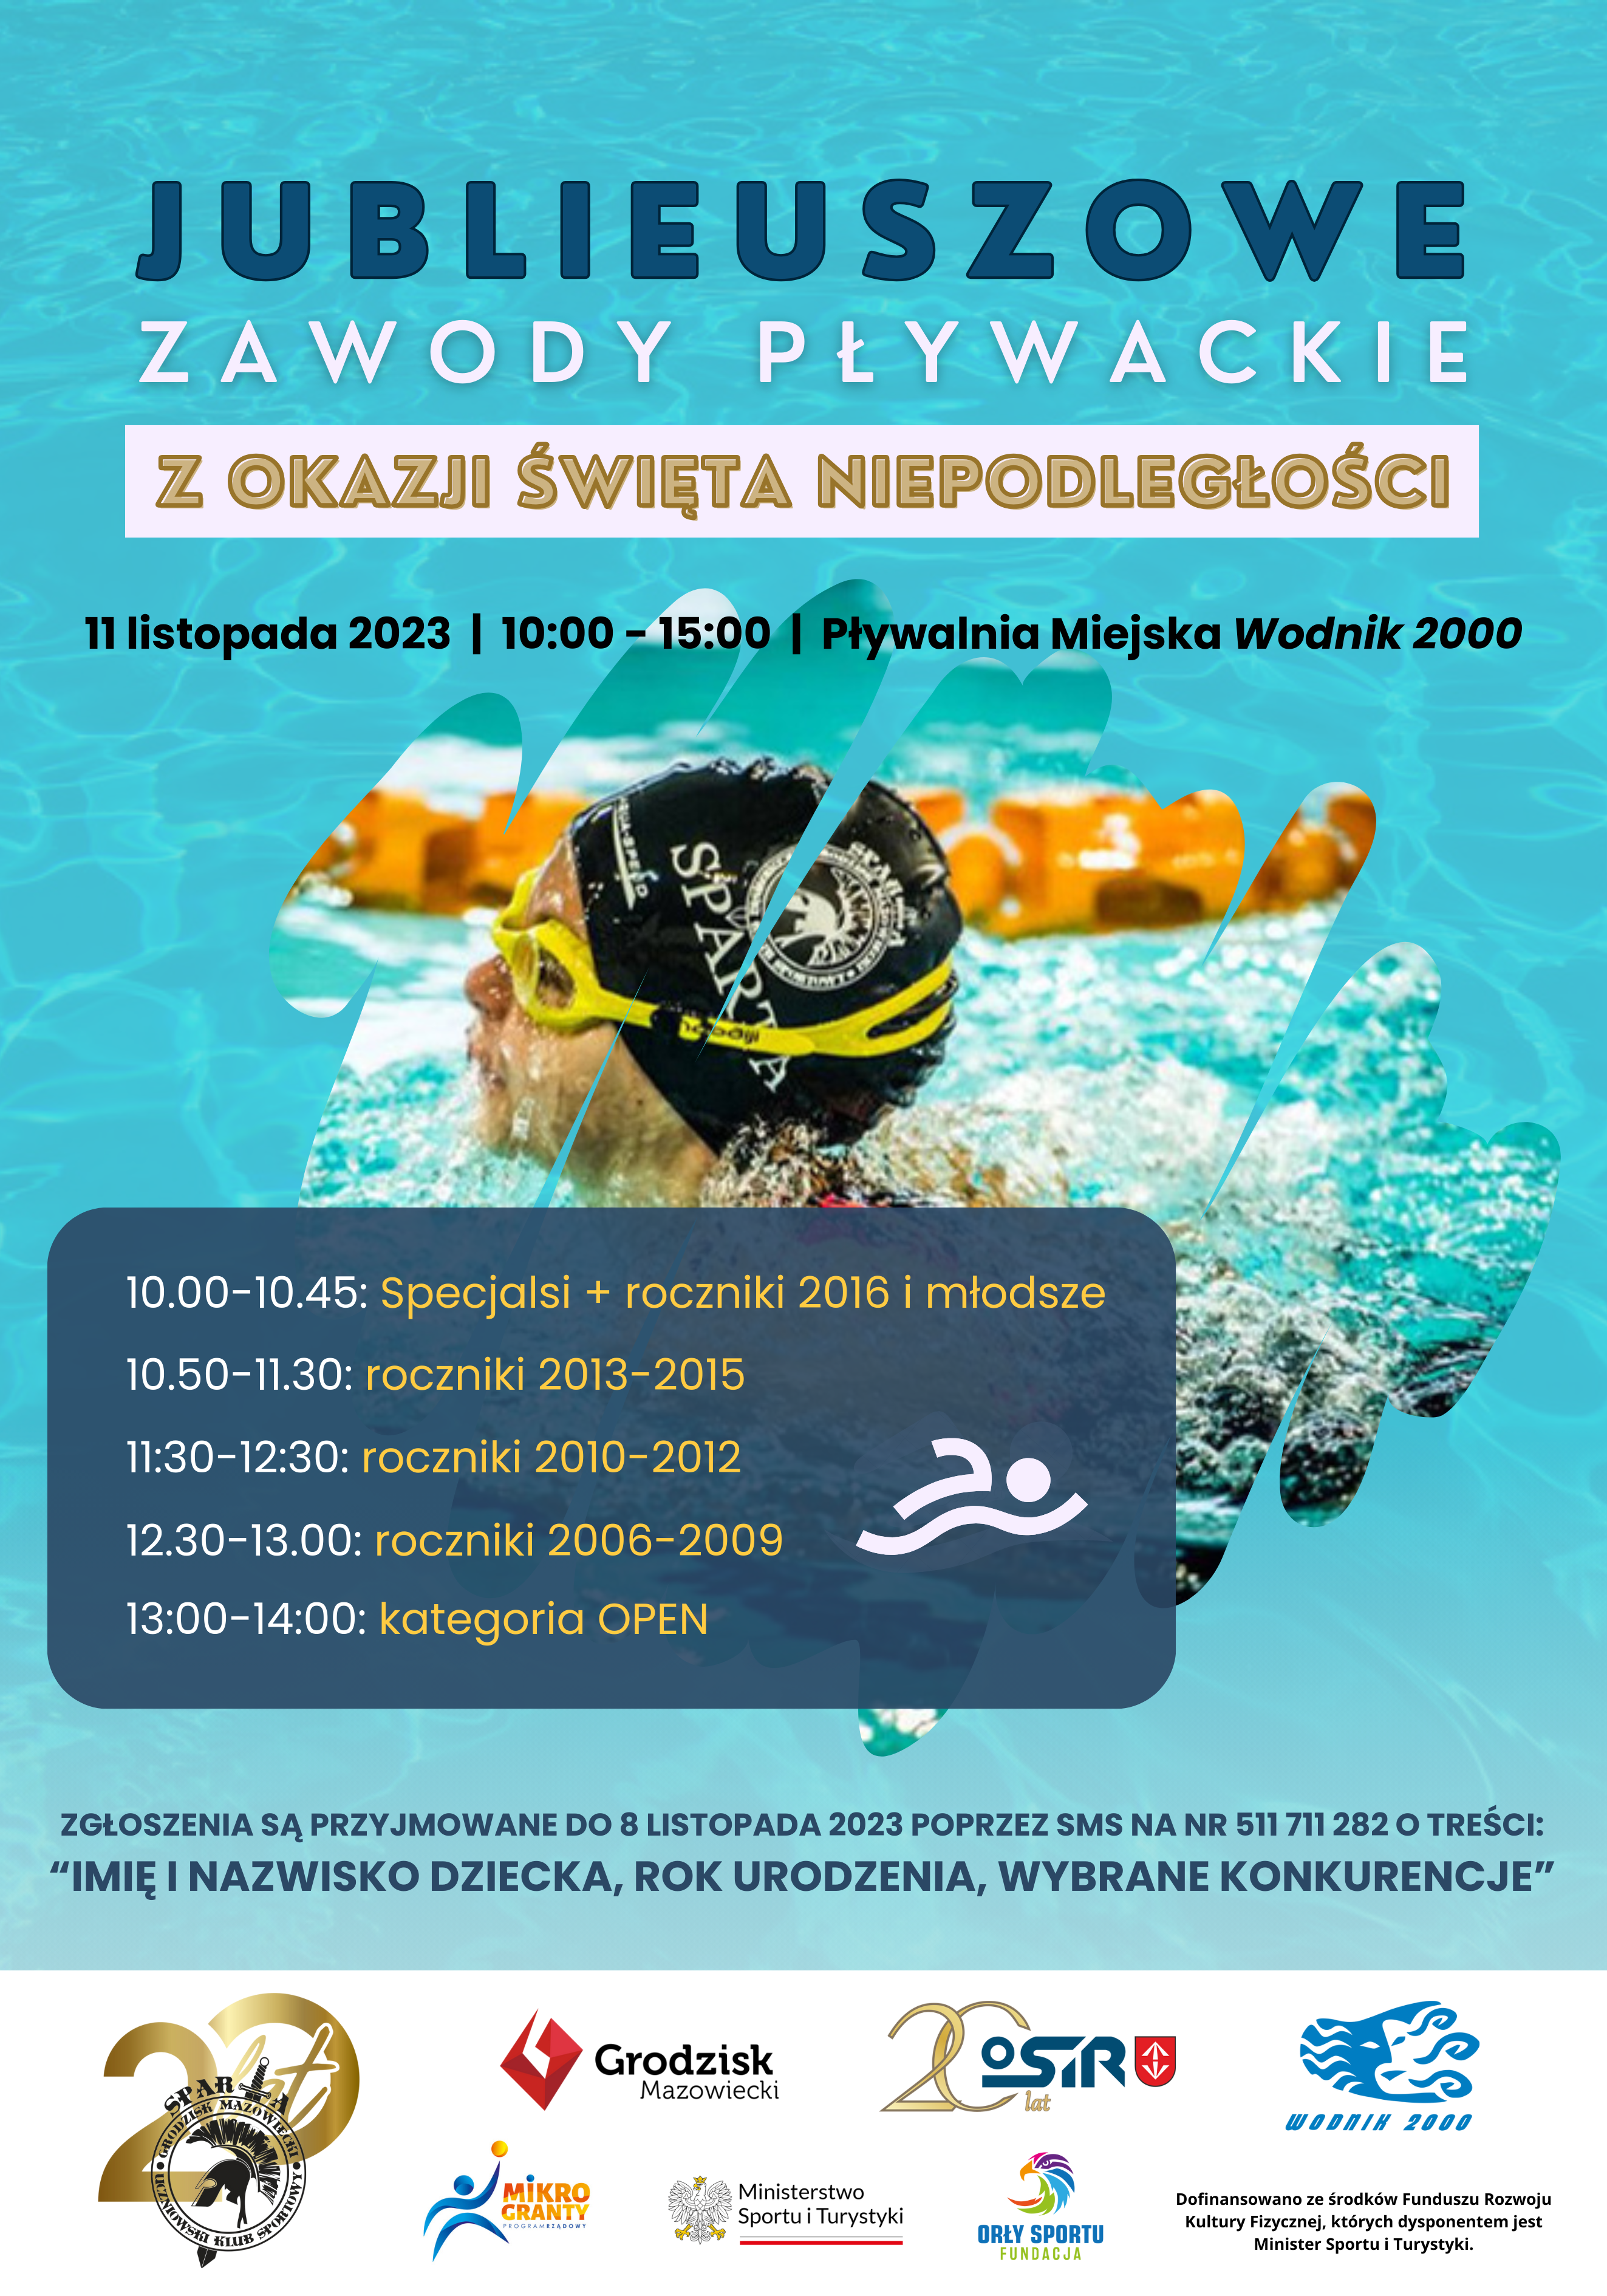 Jubileuszowe Zawody Pływackie z Święta Niepodległości/Pływalnia Miejska "Wodnik 2000"